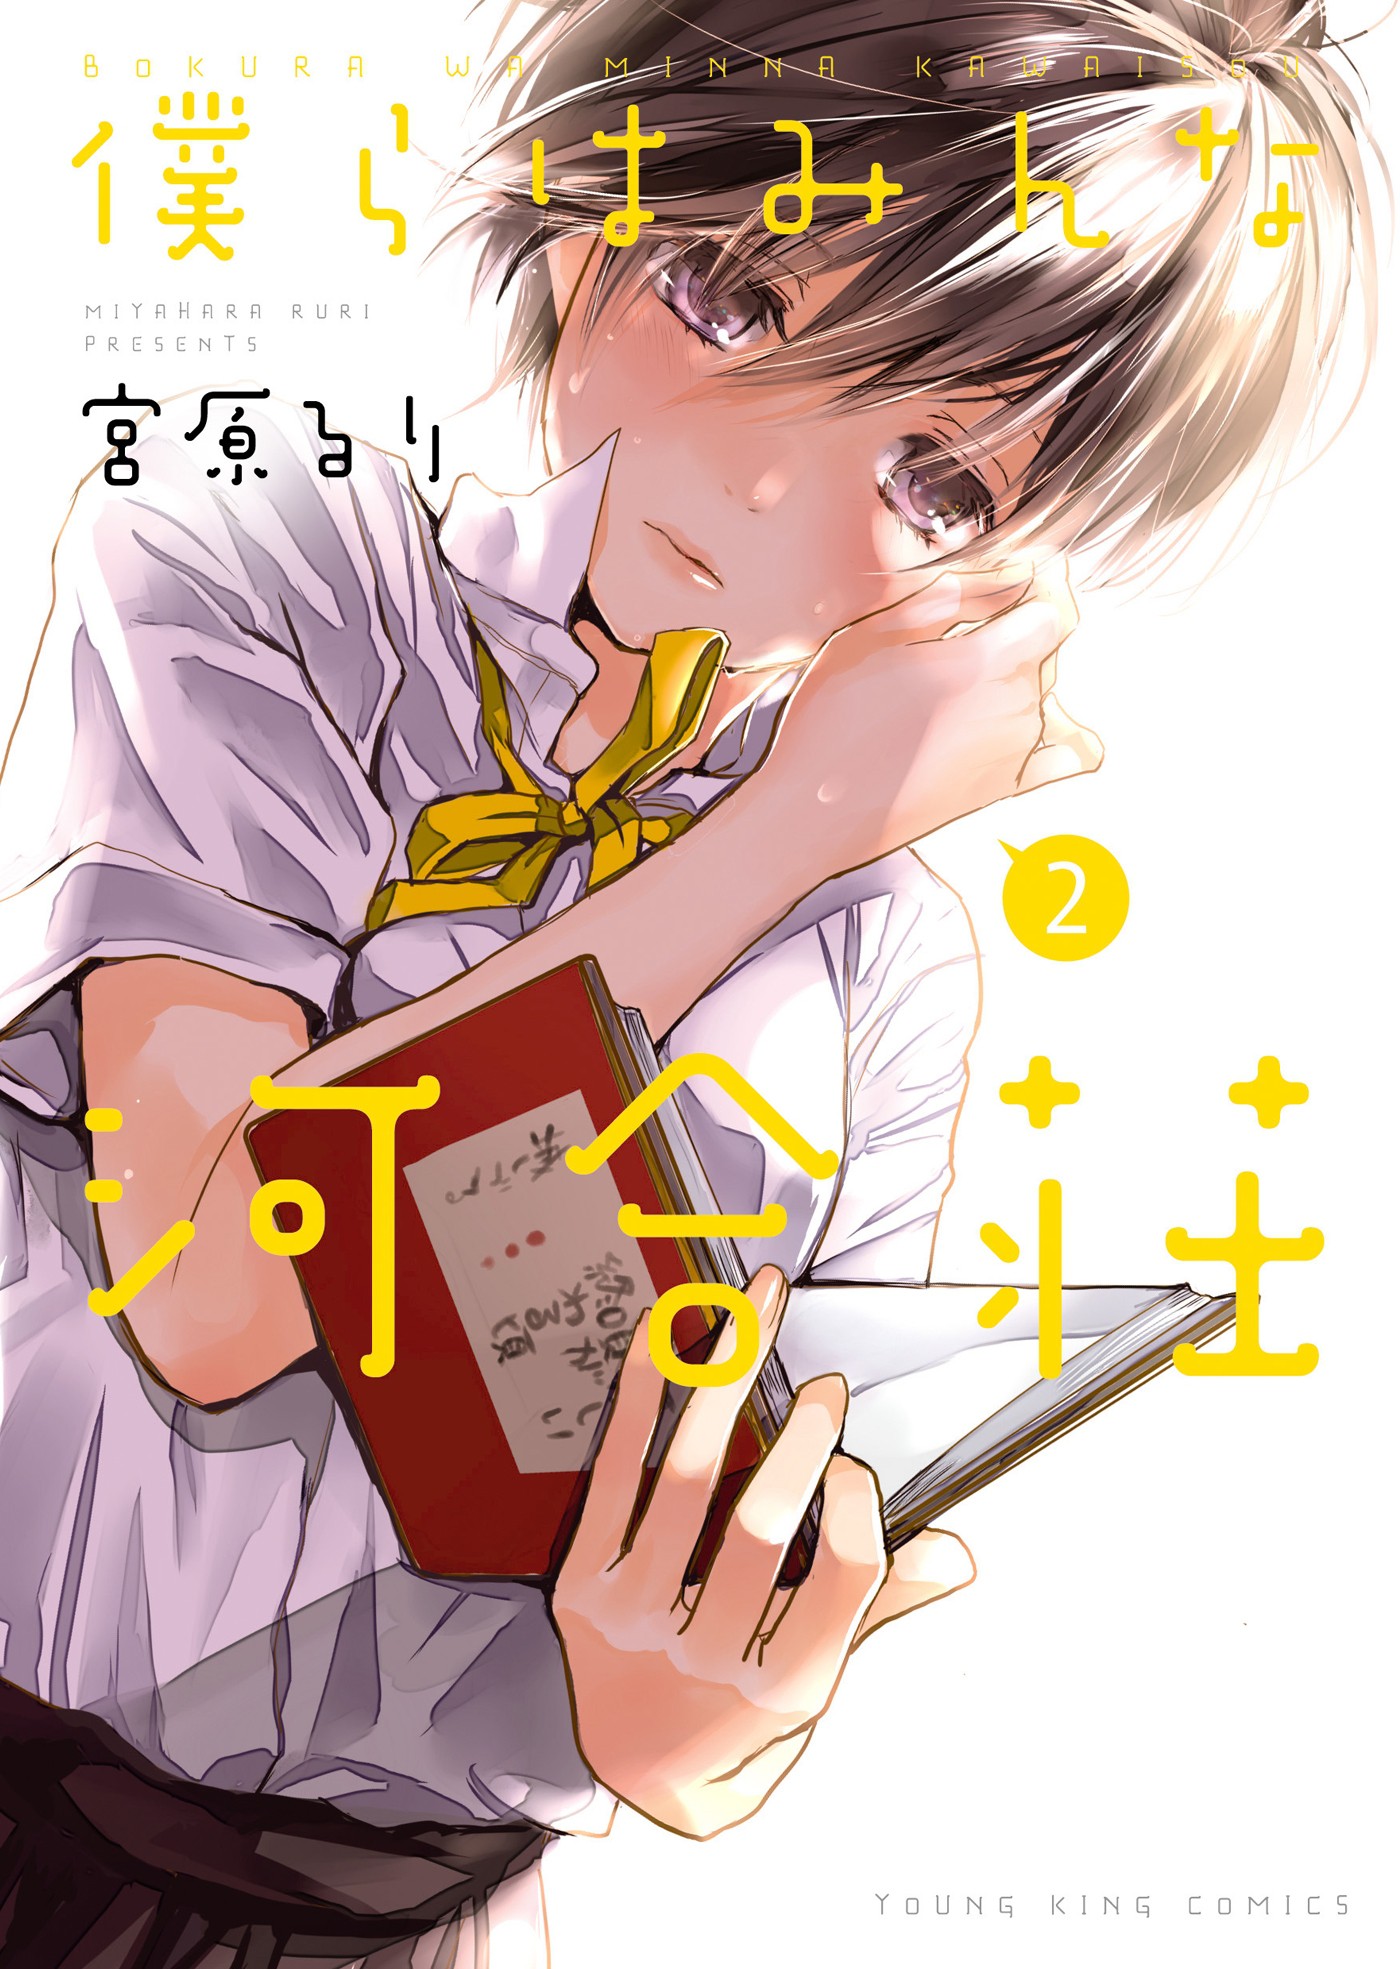 Read Bokura Wa Minna Kawaisou Vol.1 Chapter 24 on Mangakakalot